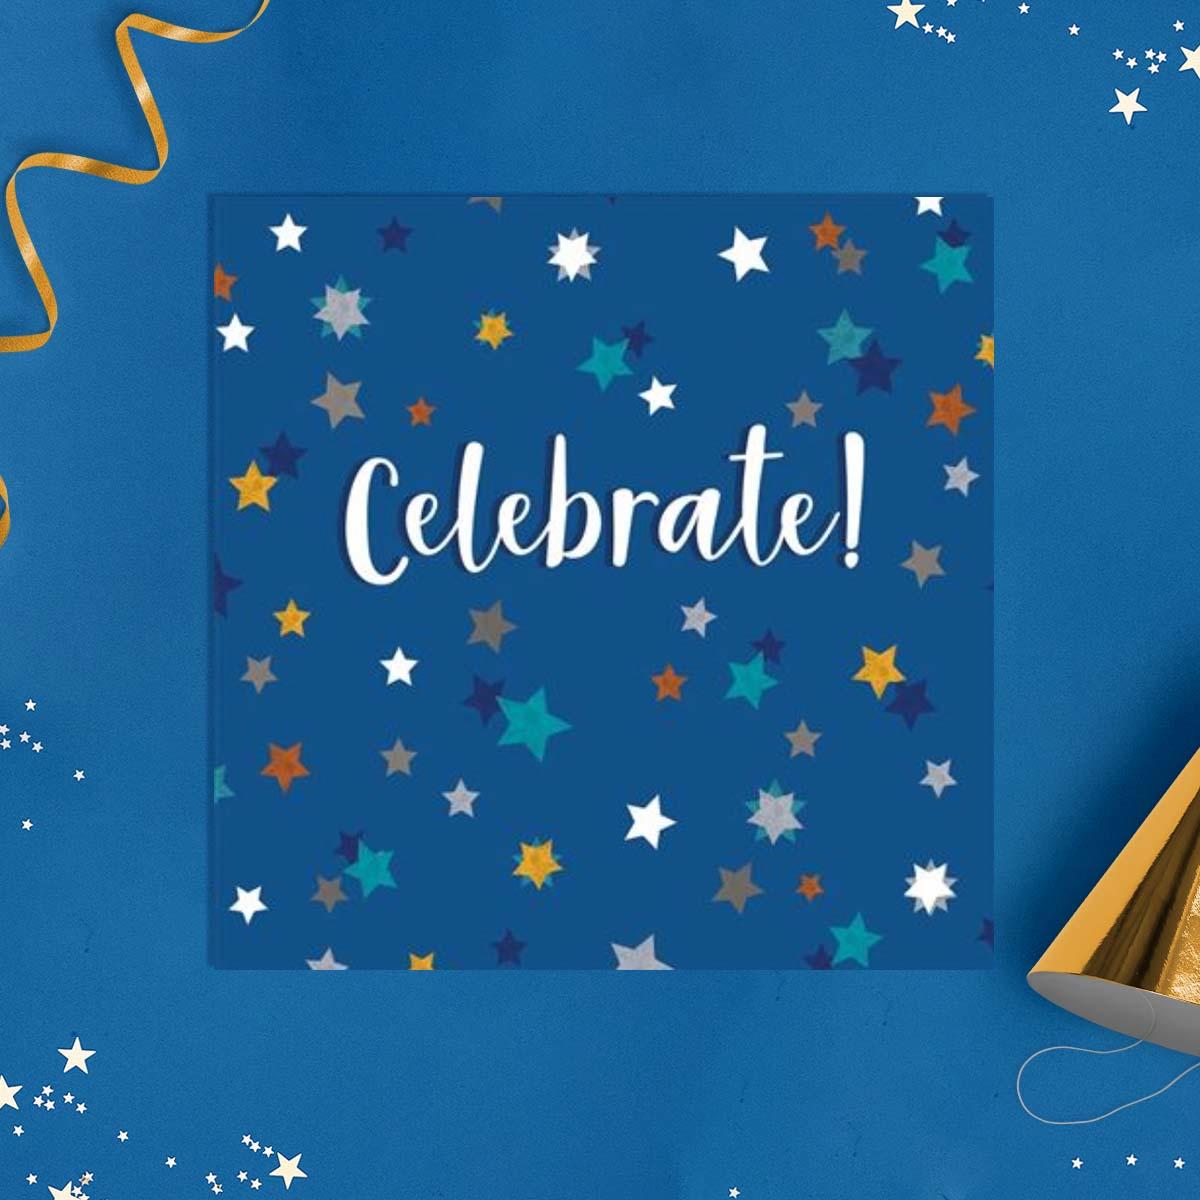 Kindred - Celebrate! Card Front Image